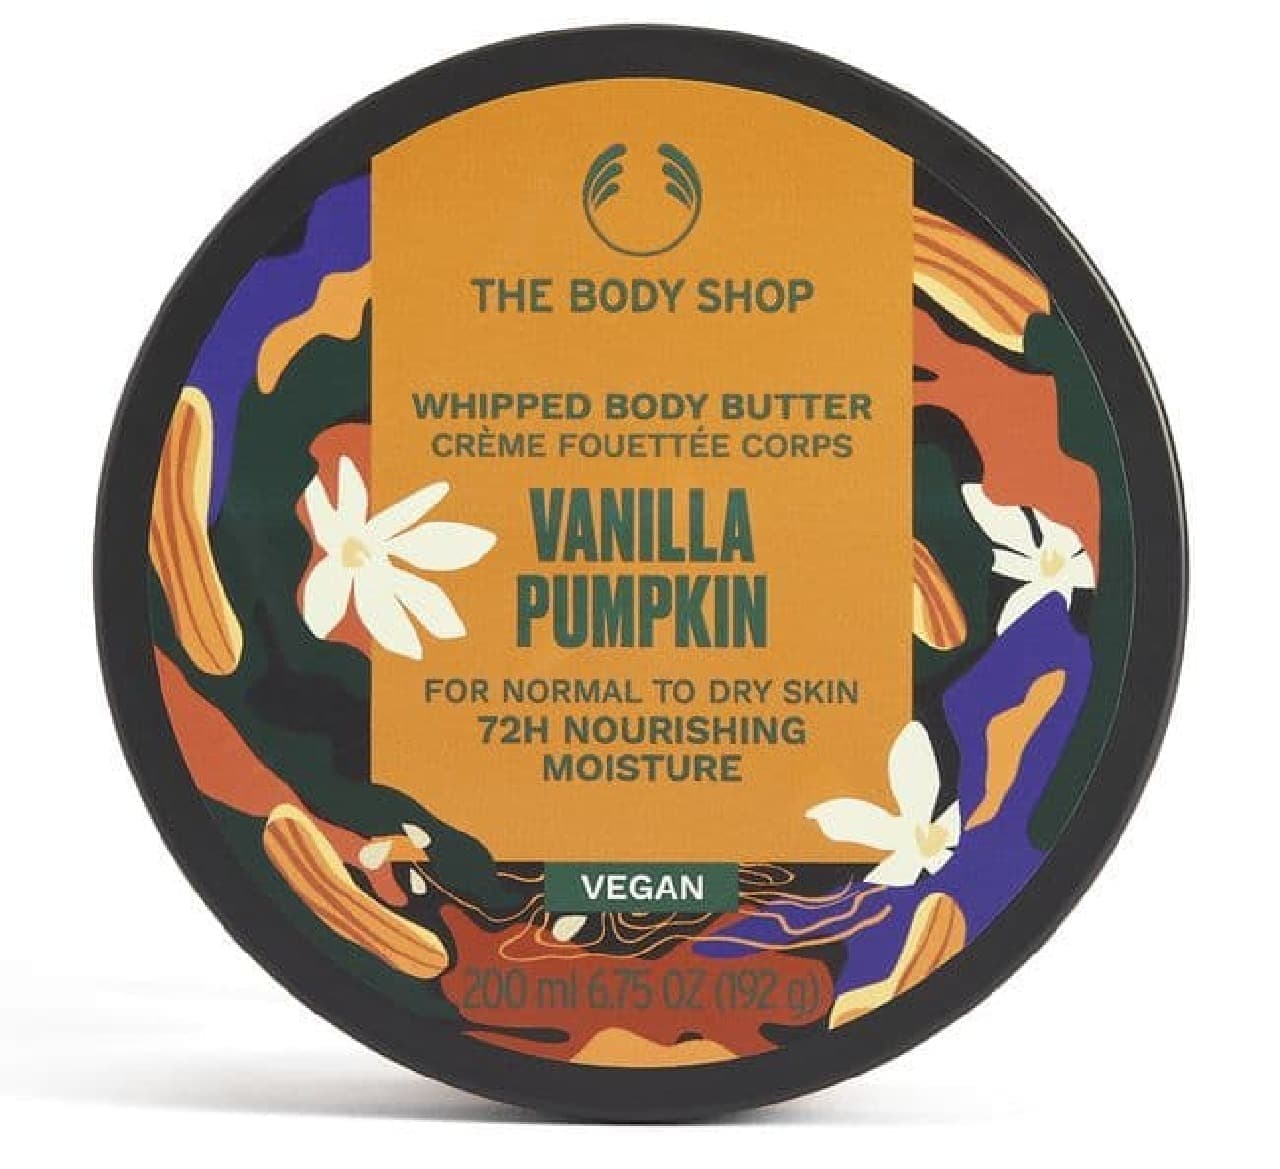 The Body Shop "Whipped Body Butter Vanilla Pumpkin"